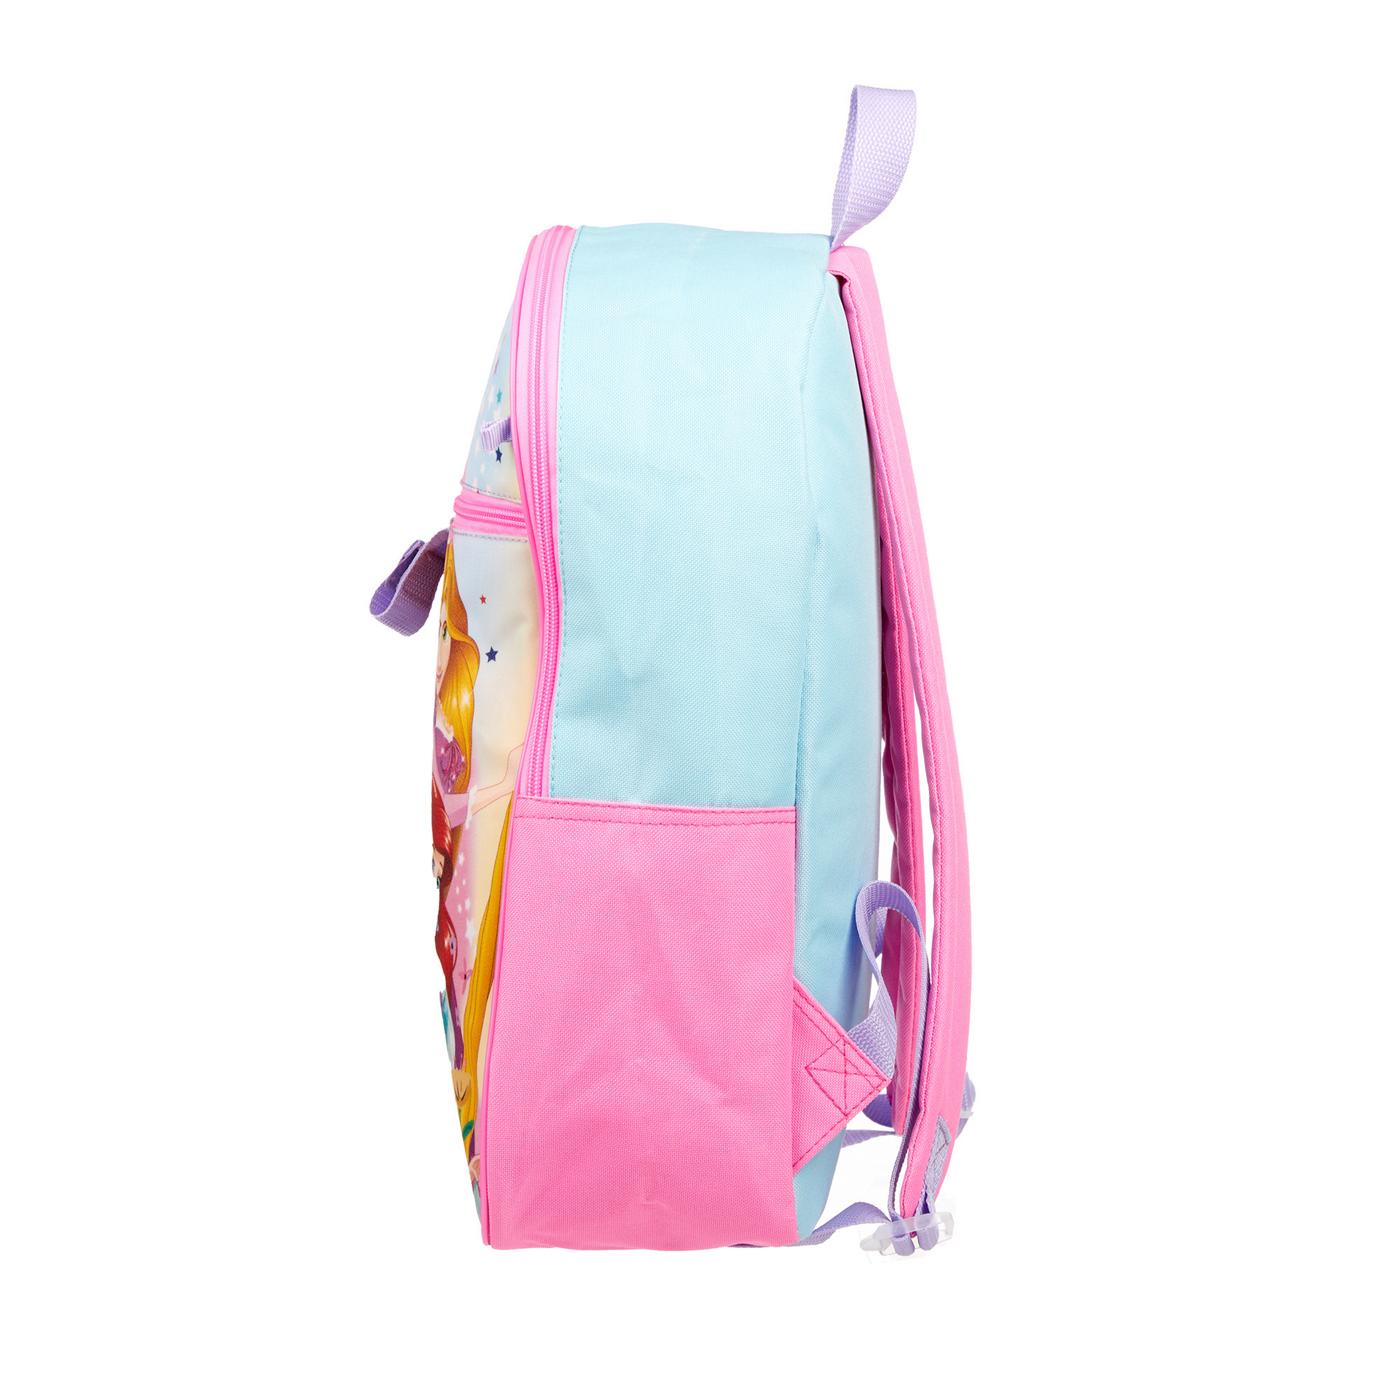 Disney Princess Backpack Set; image 3 of 5